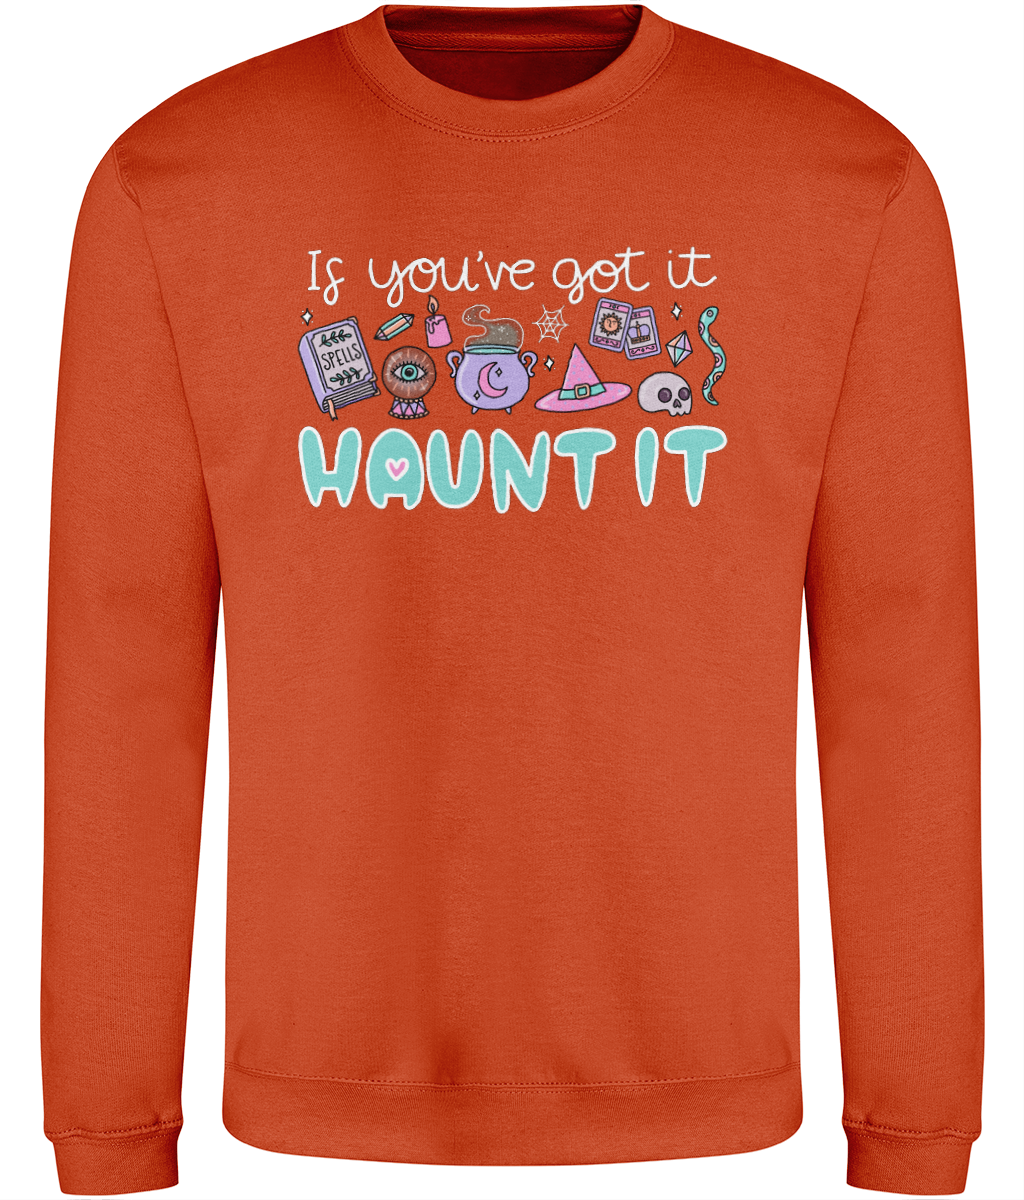 Spellbound Sweatshirt - If you've got it...haunt it